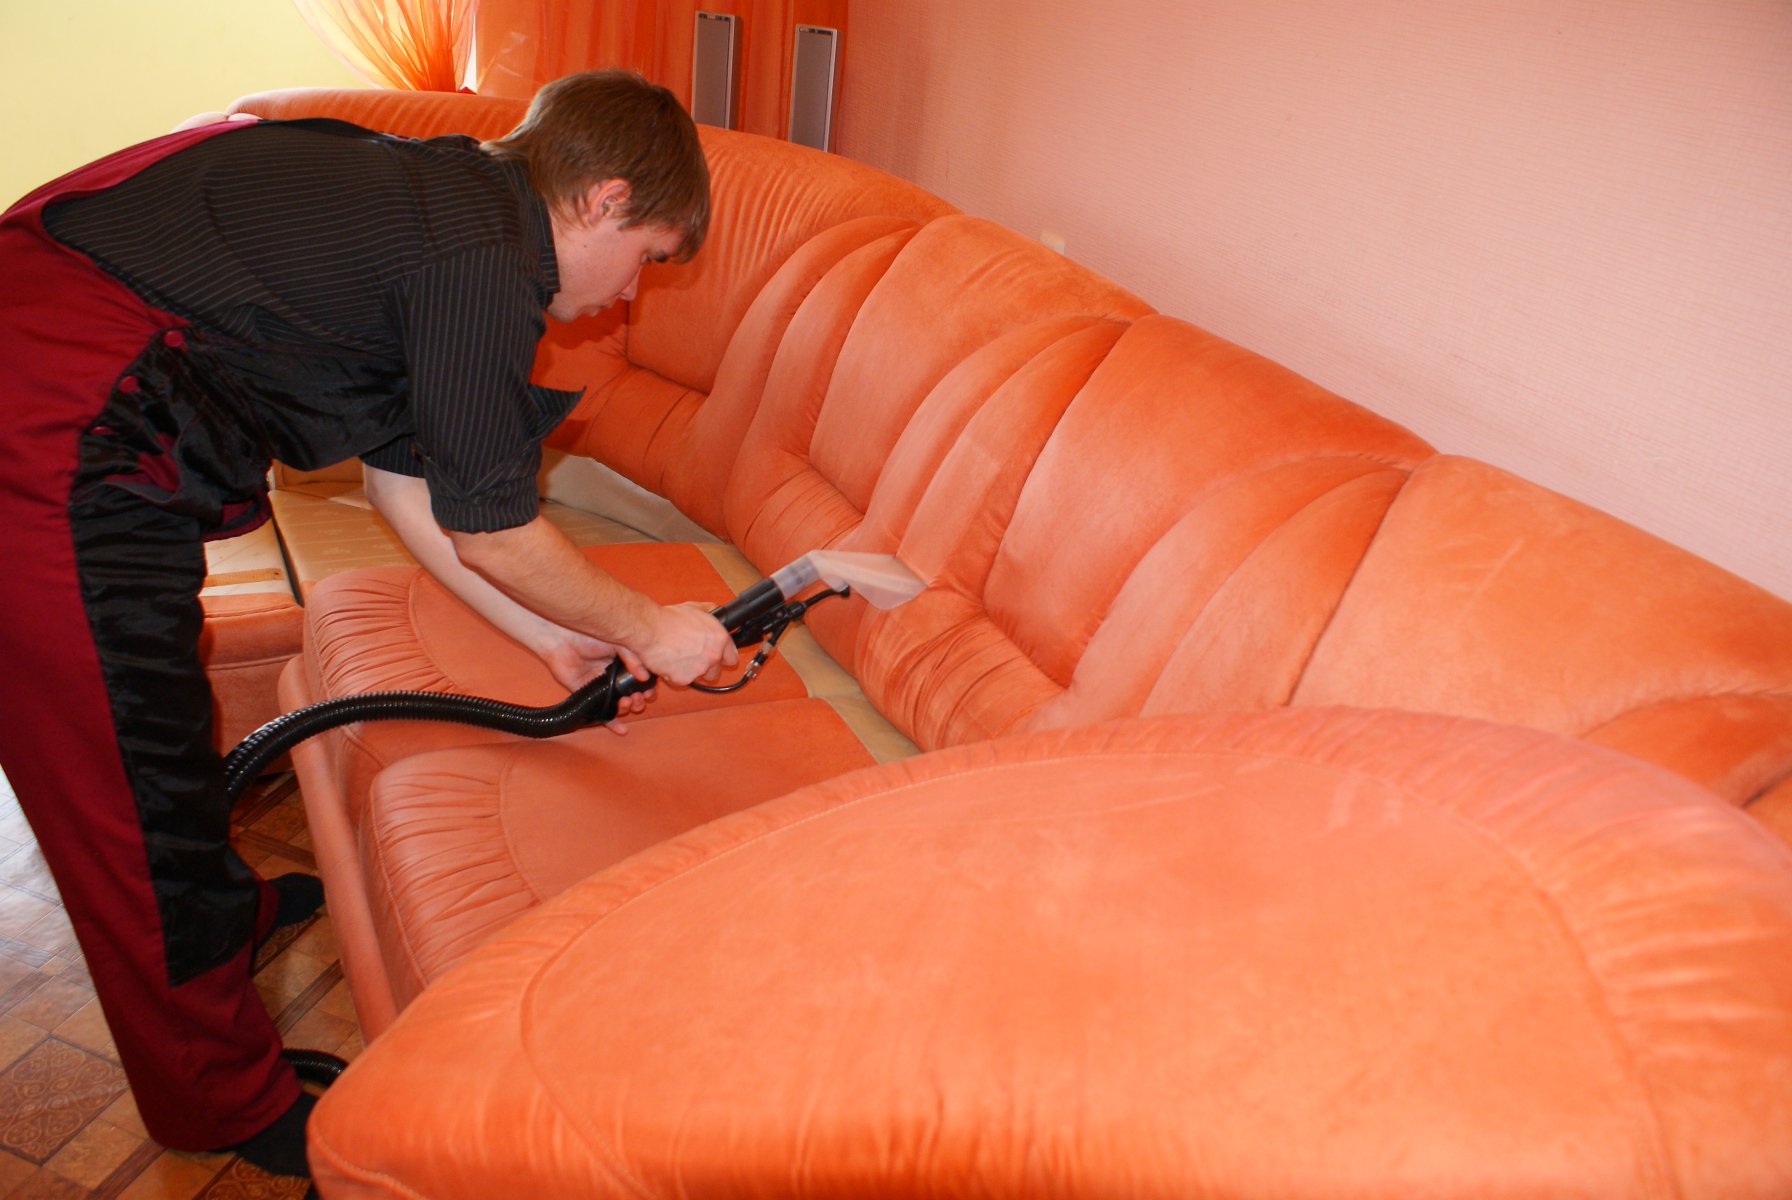 Мастер производит чистку кожаного дивана с помощью пылесоса